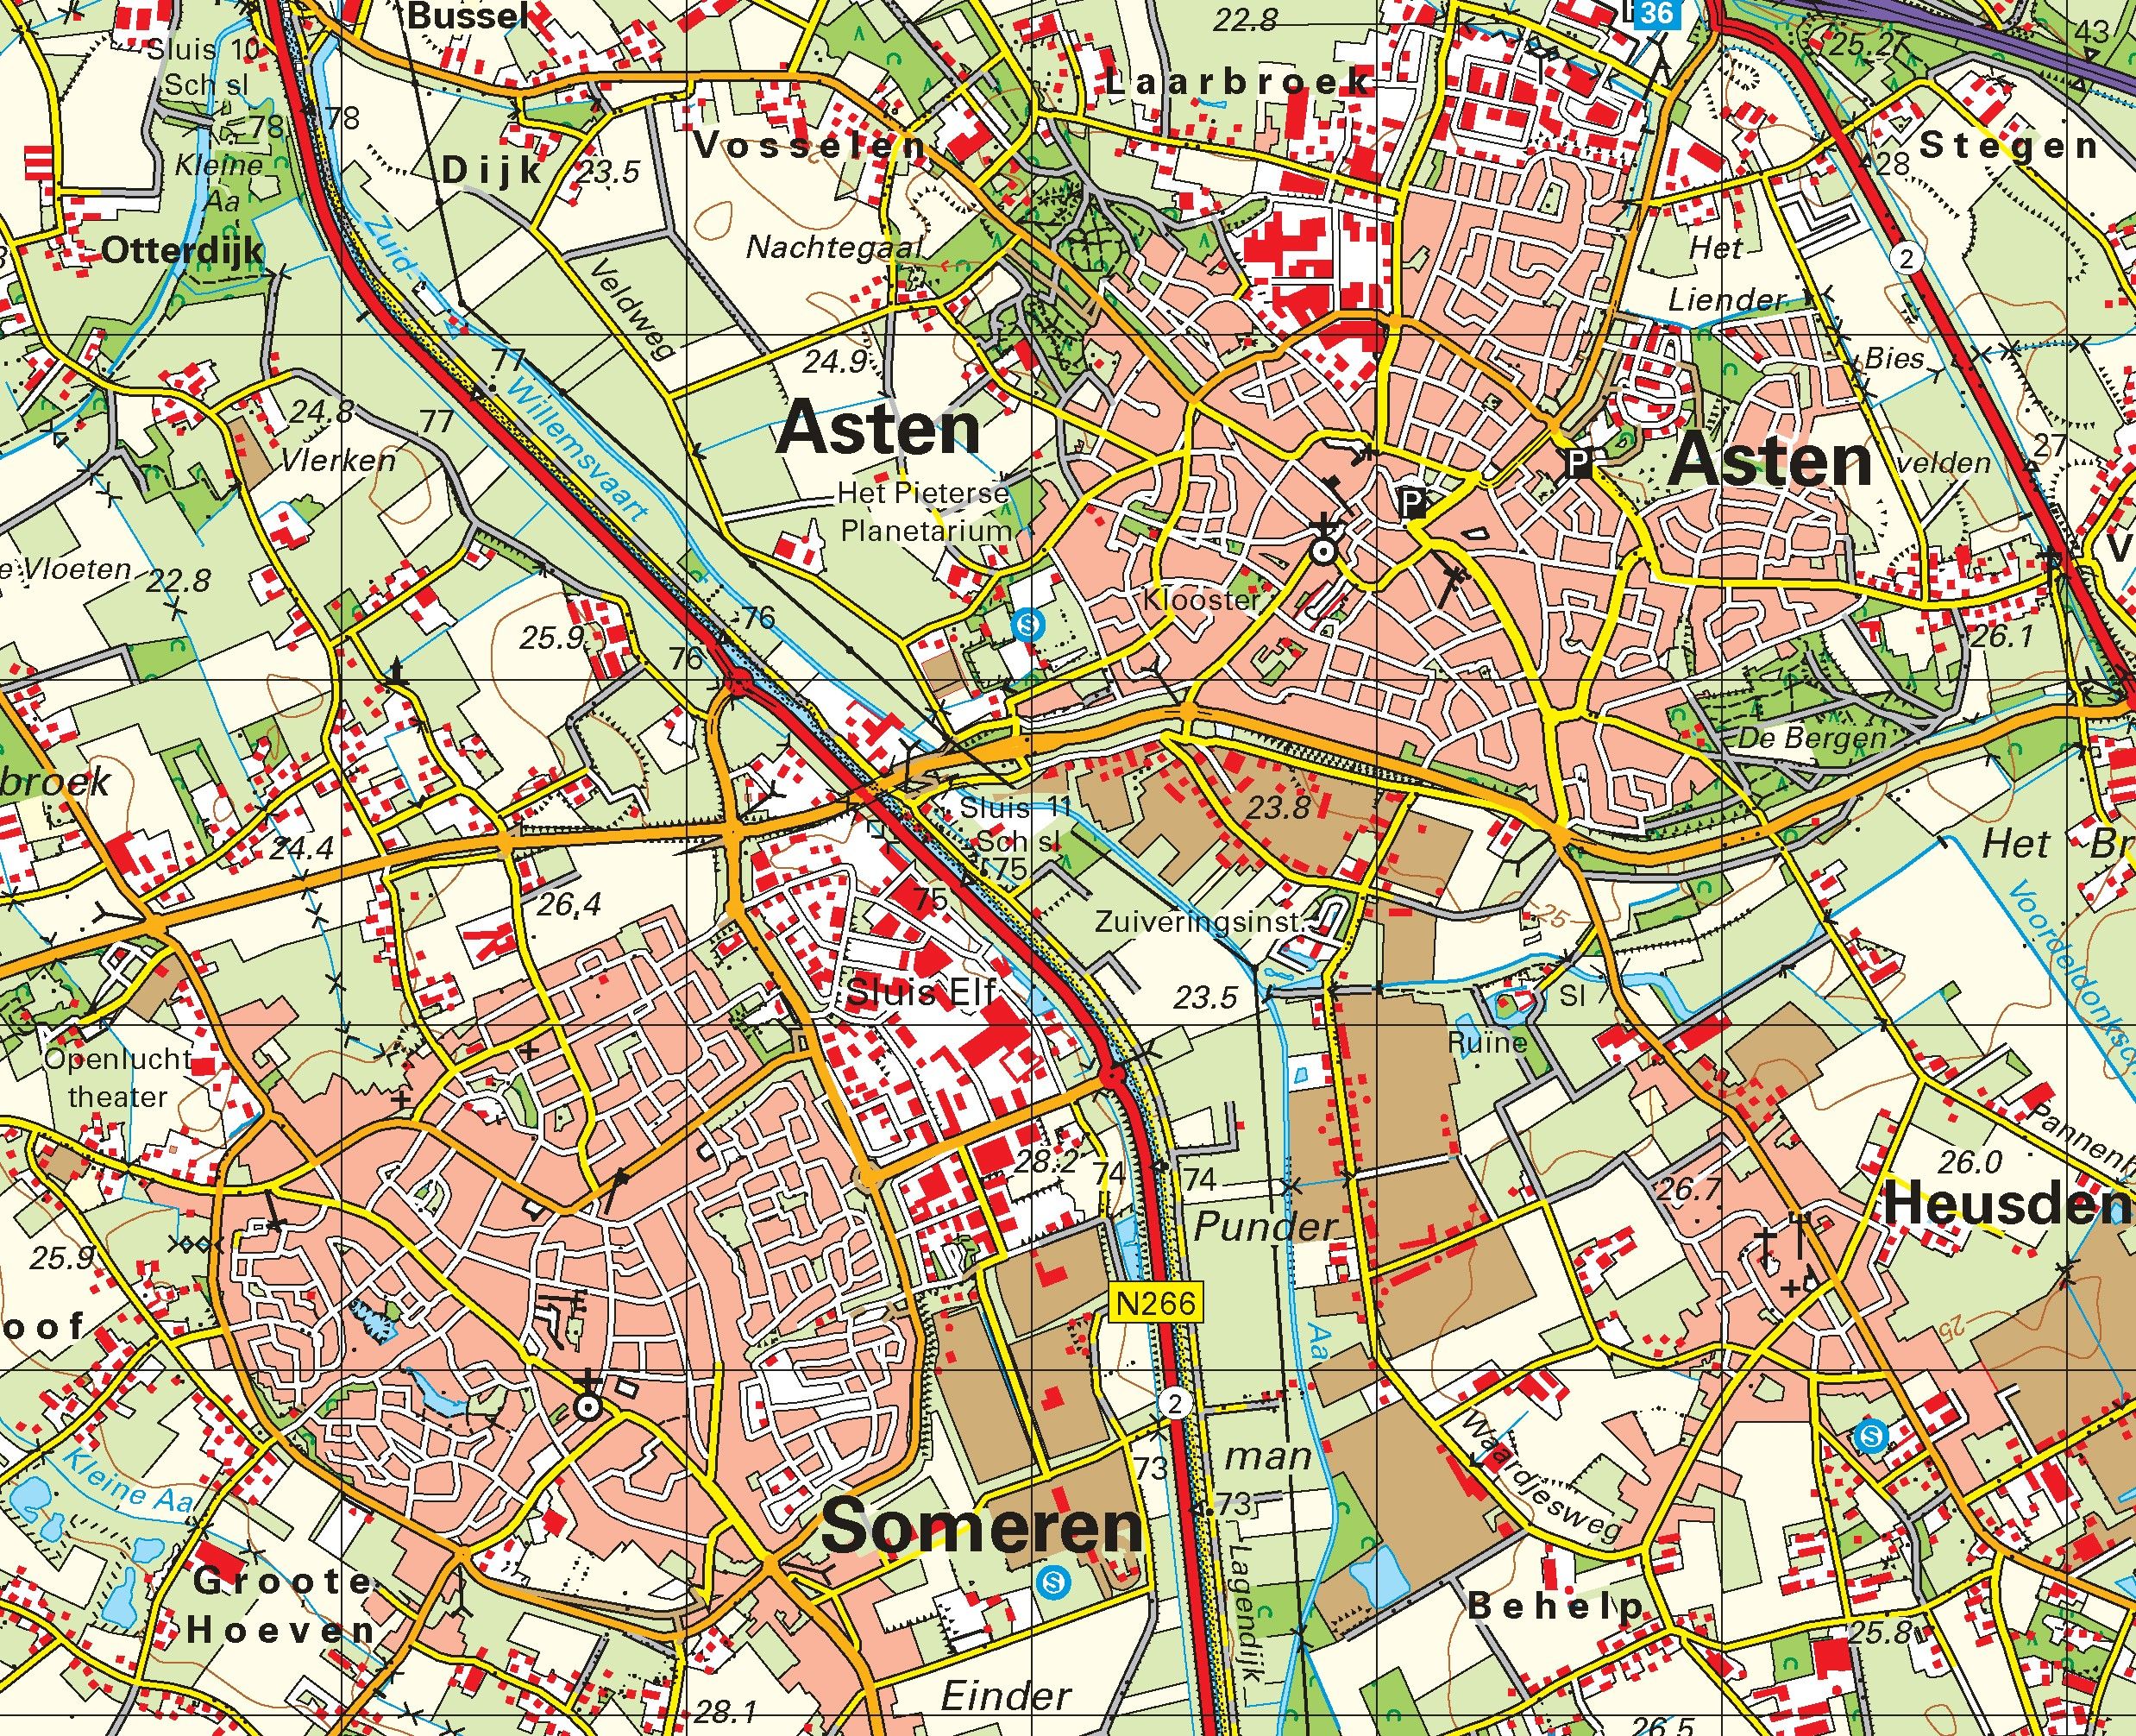 Topografische kaart schaal 1:50.000 (Eindhoven, Helmond, Venray, Weert, Roermond)